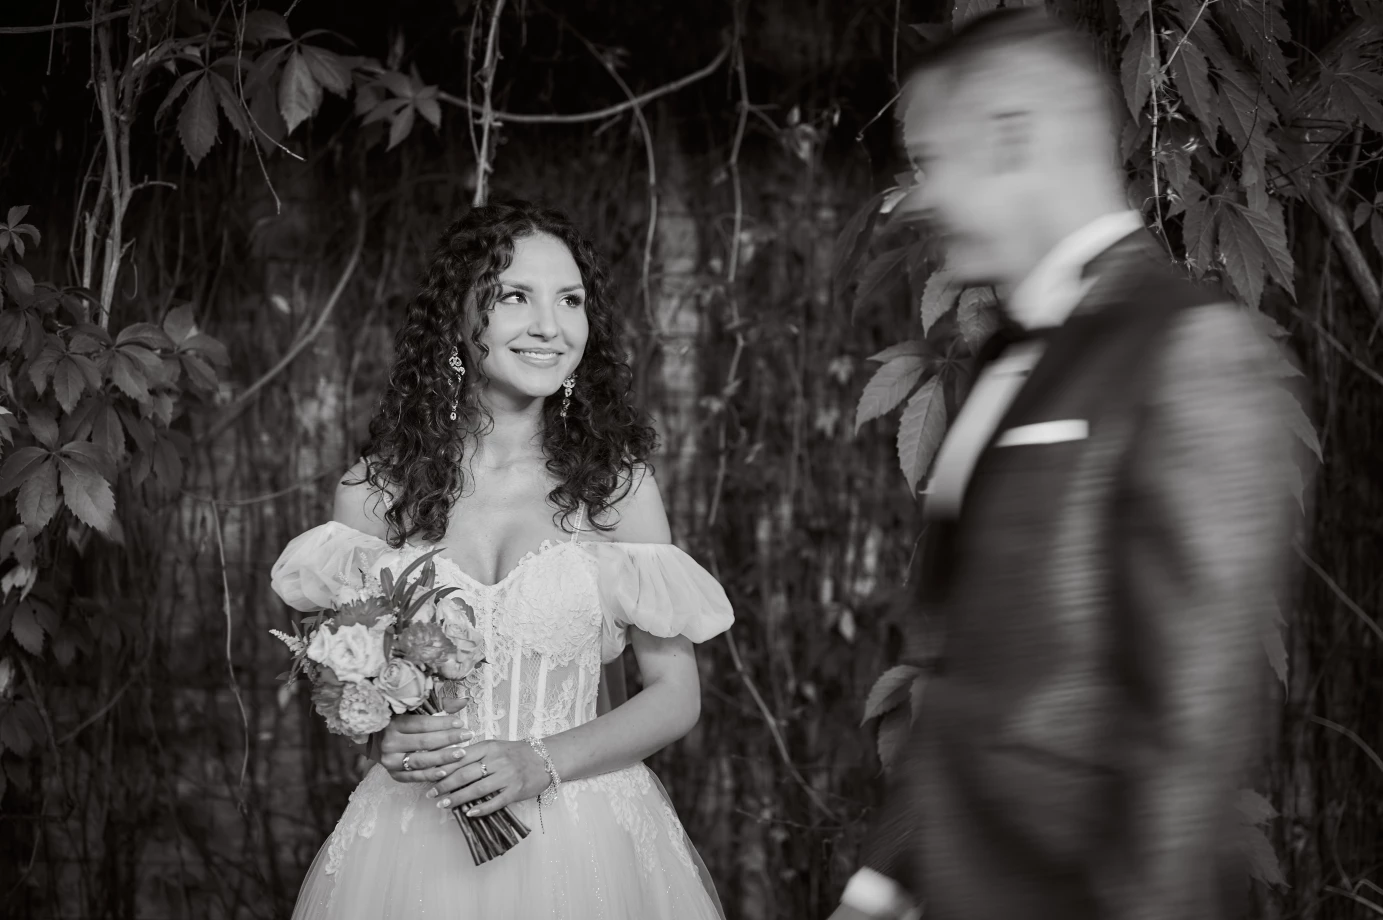 zdjęcia dzialdowo fotograf sebastian-swiatkiewicz portfolio zdjecia slubne inspiracje wesele plener slubny sesja slubna